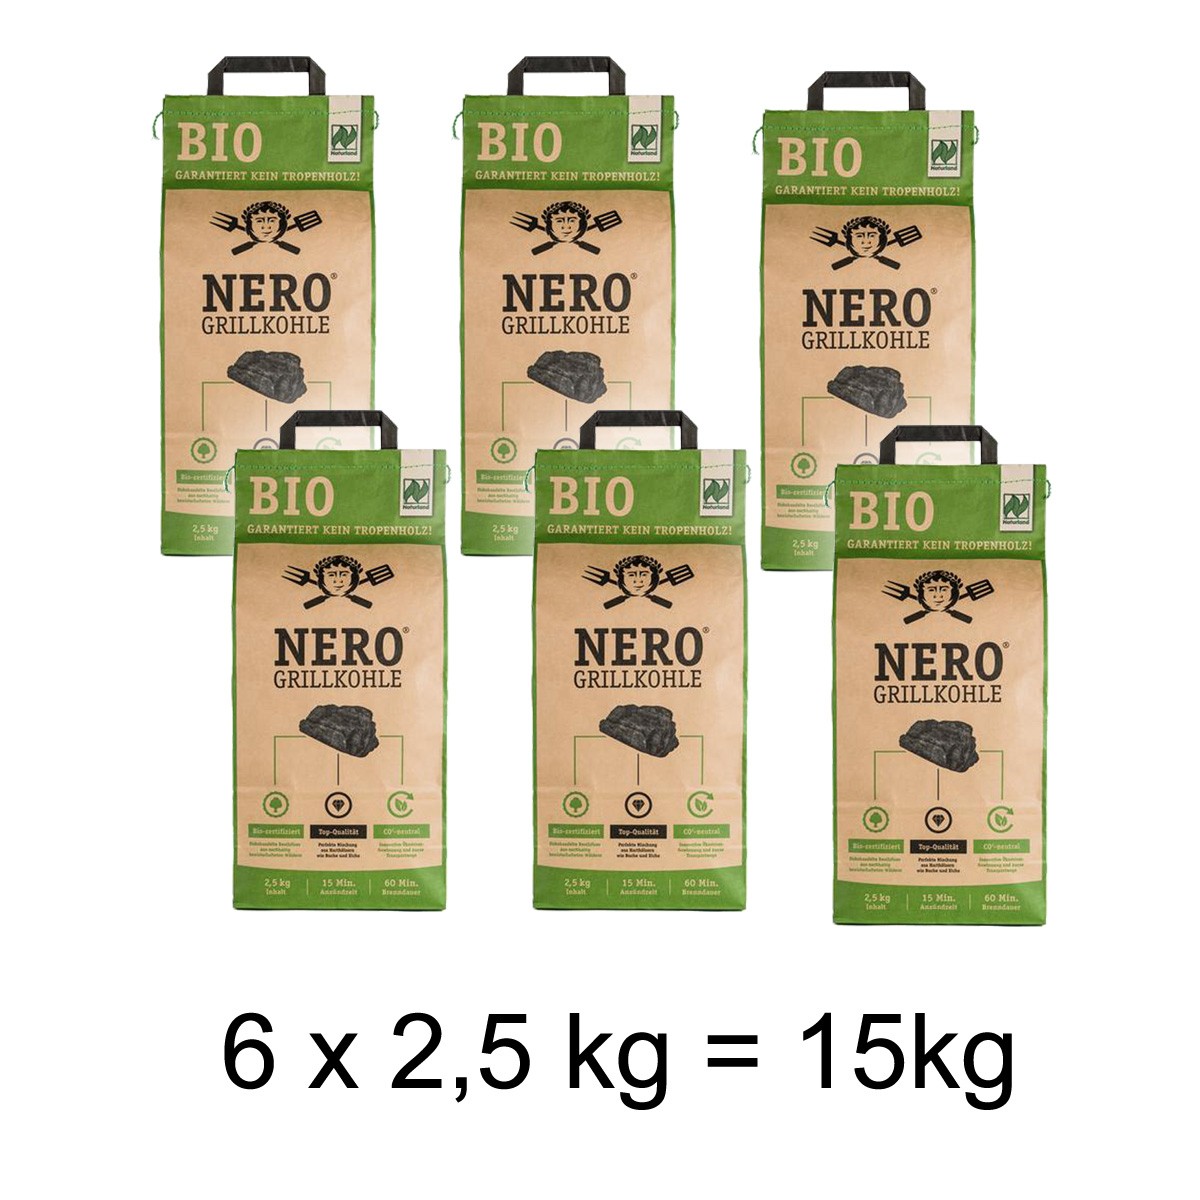 NERO BIO Grill-Holzkohle – 6 x 2,5kg Sack – Garantiert ohne Tropenh…